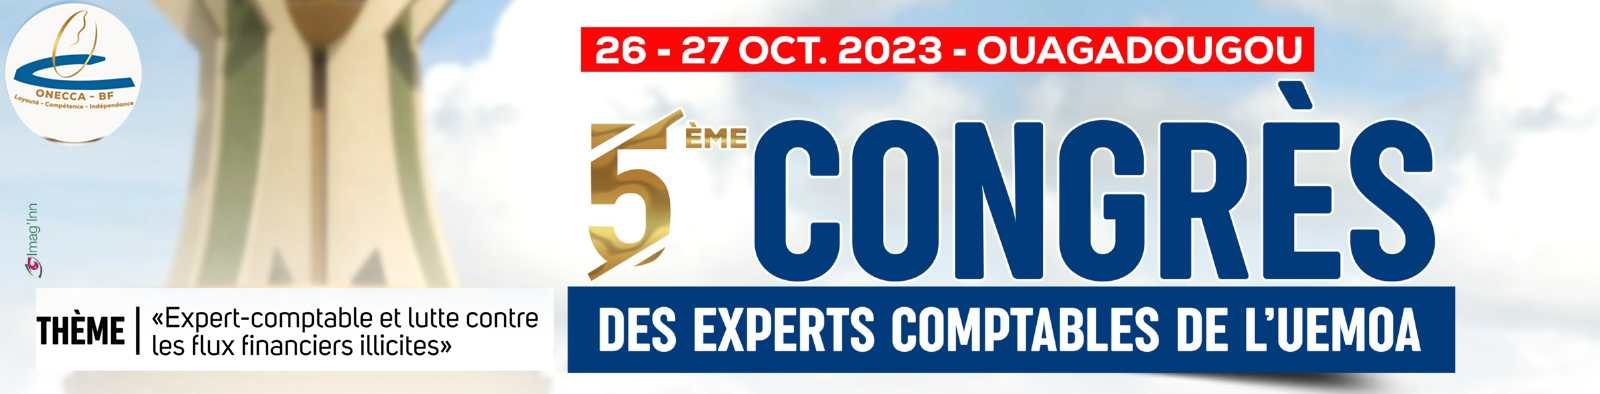 5 ième congrès des experts comptables de l'UEMOA